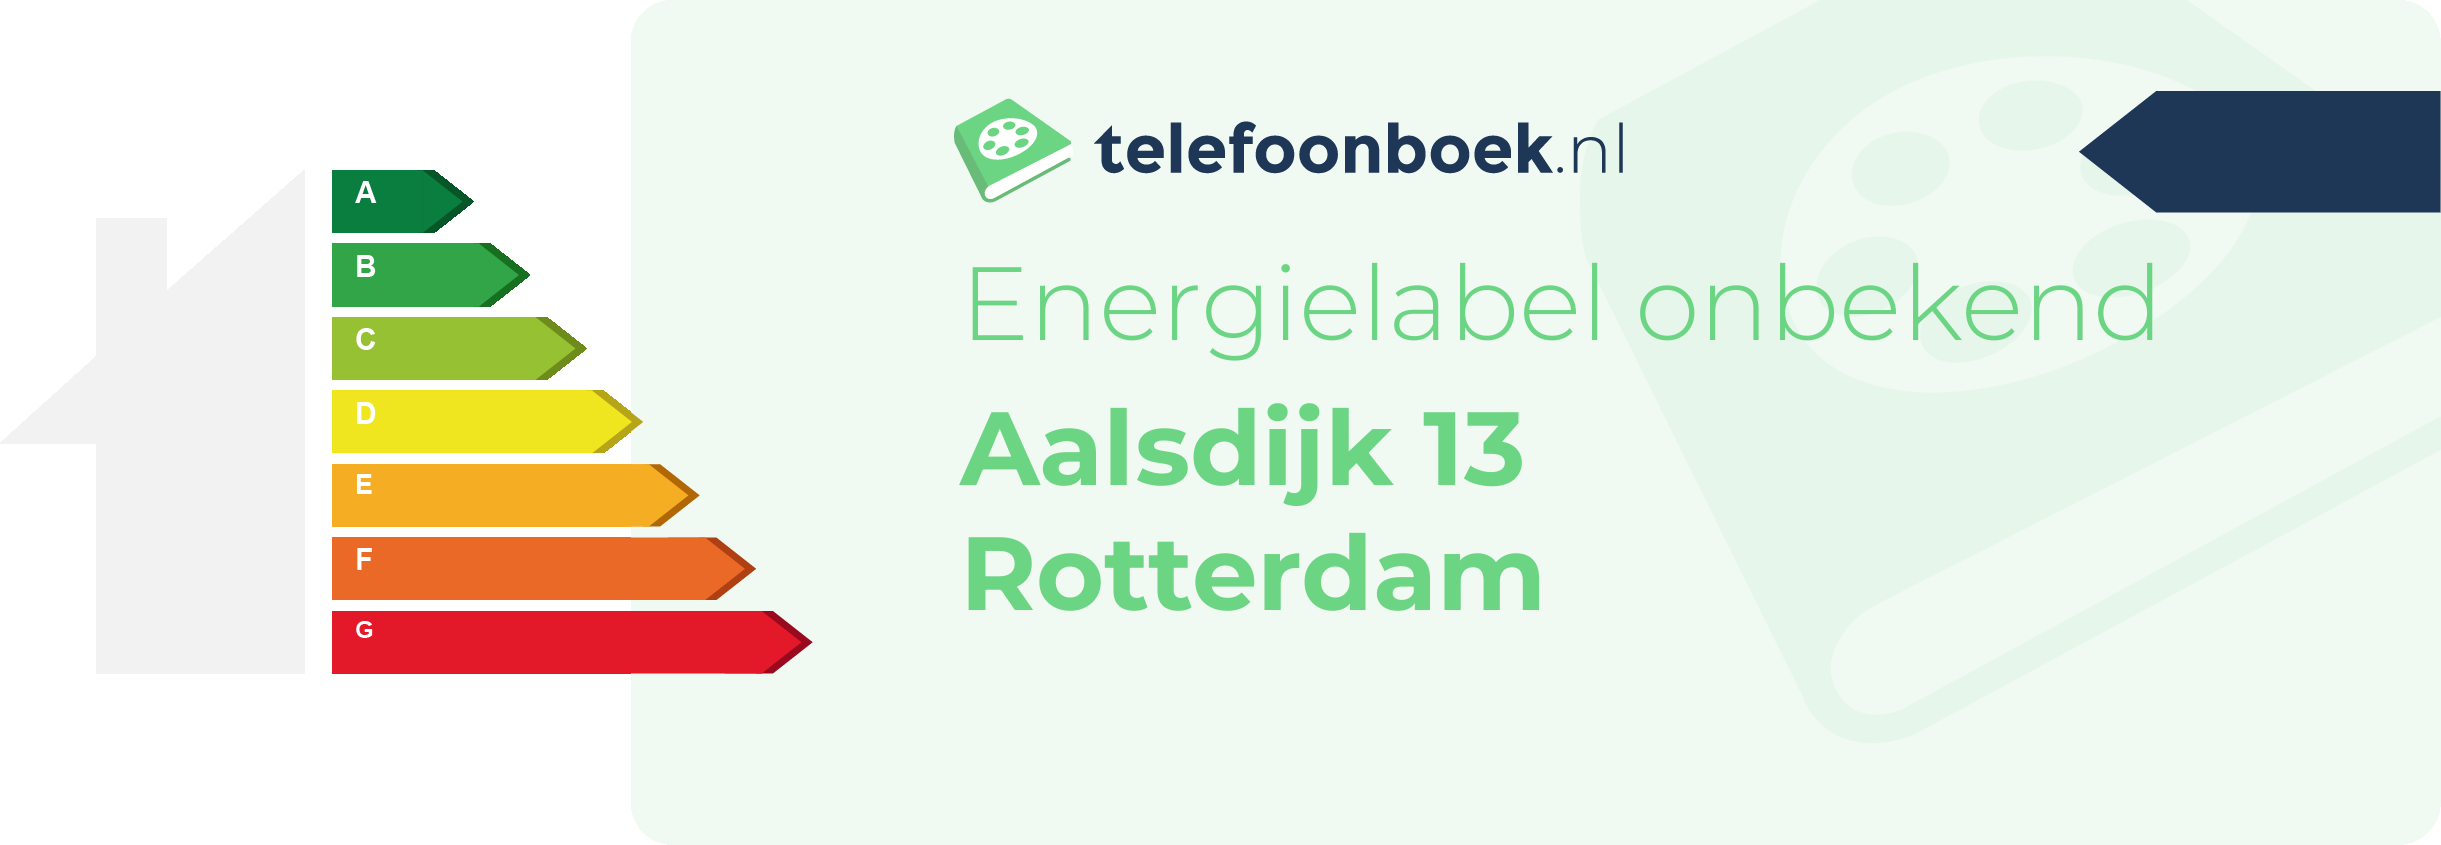 Energielabel Aalsdijk 13 Rotterdam